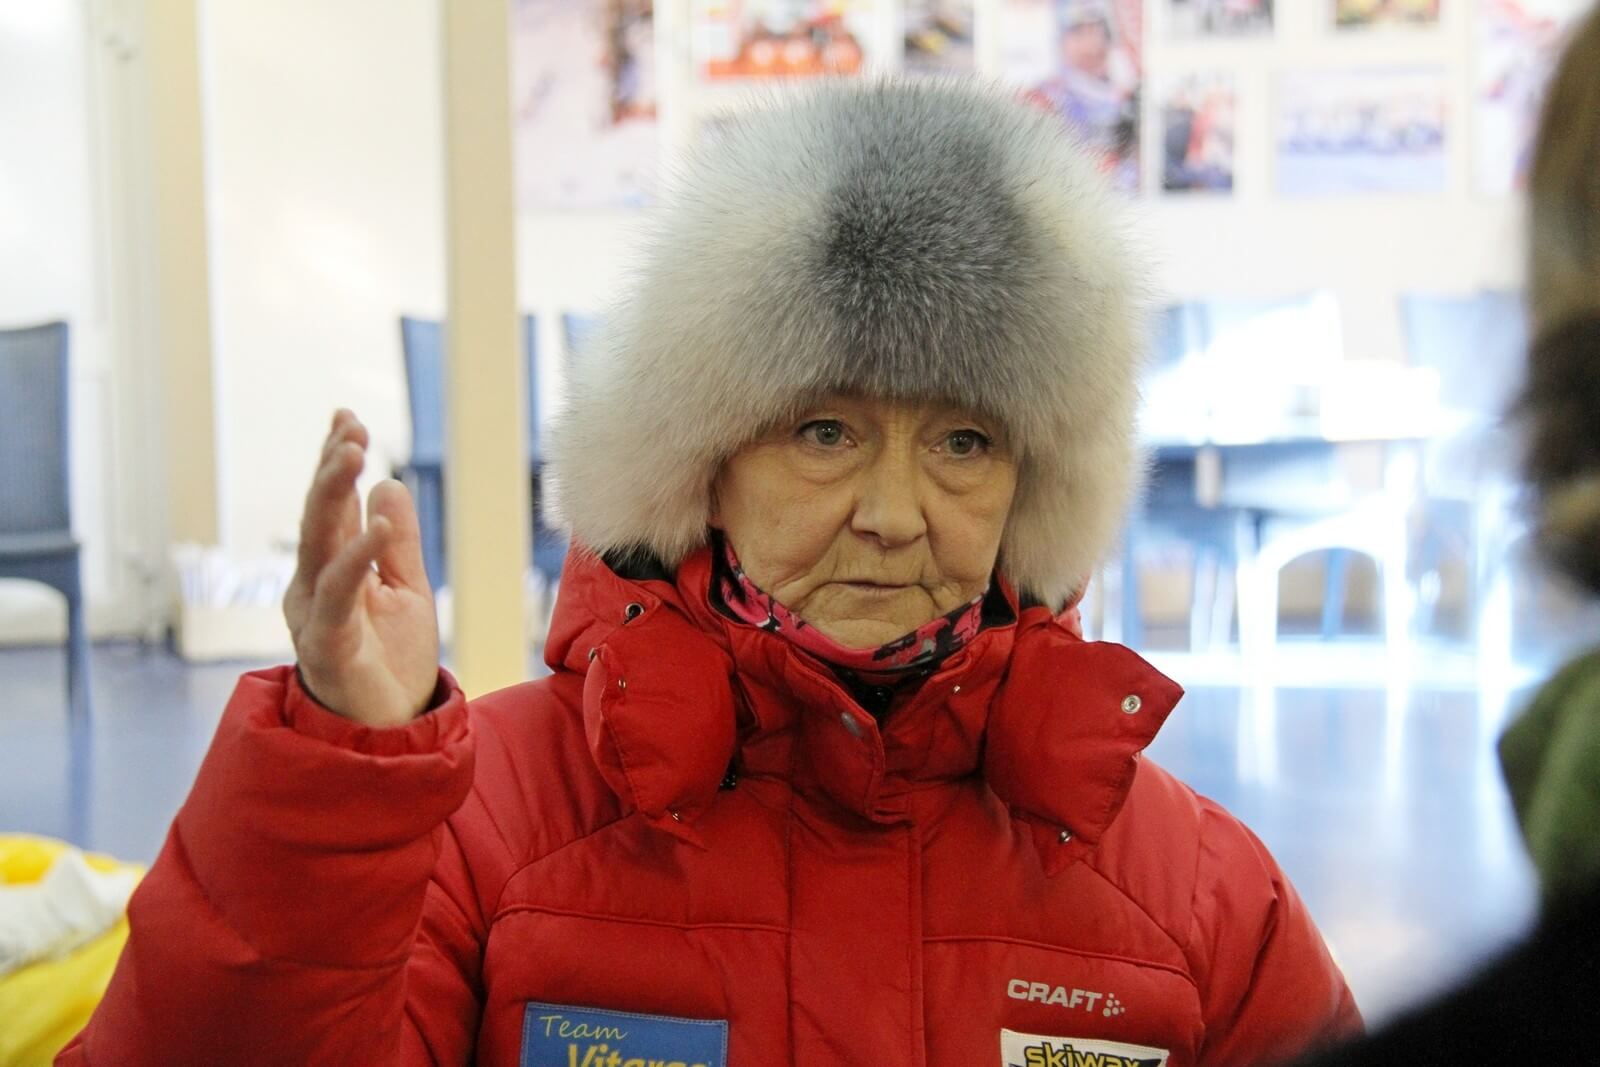 Фото директора СШОР 4 г. Рыбинска Емелина С. В. - Демино готово к проведению Деминского лыжного марафона 2018